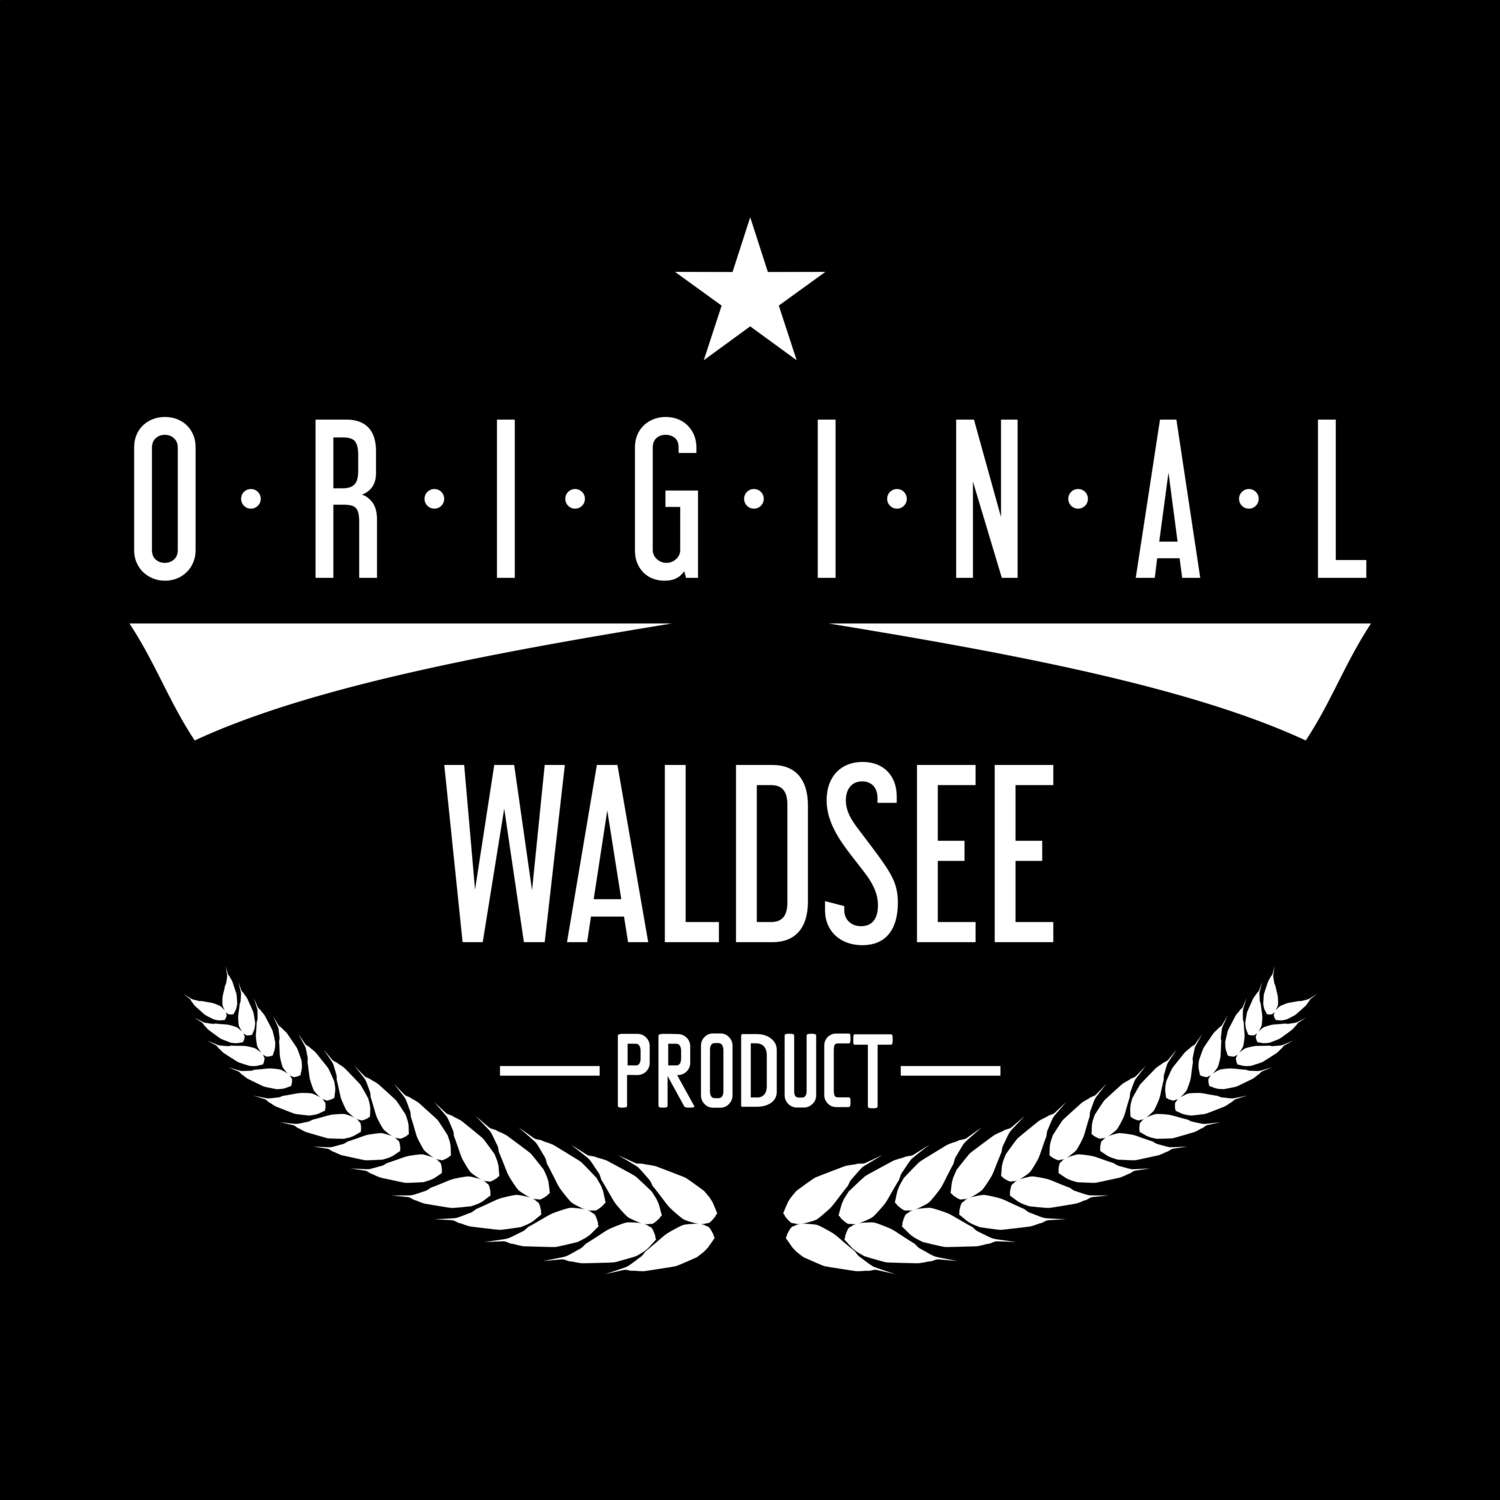 Waldsee T-Shirt »Original Product«